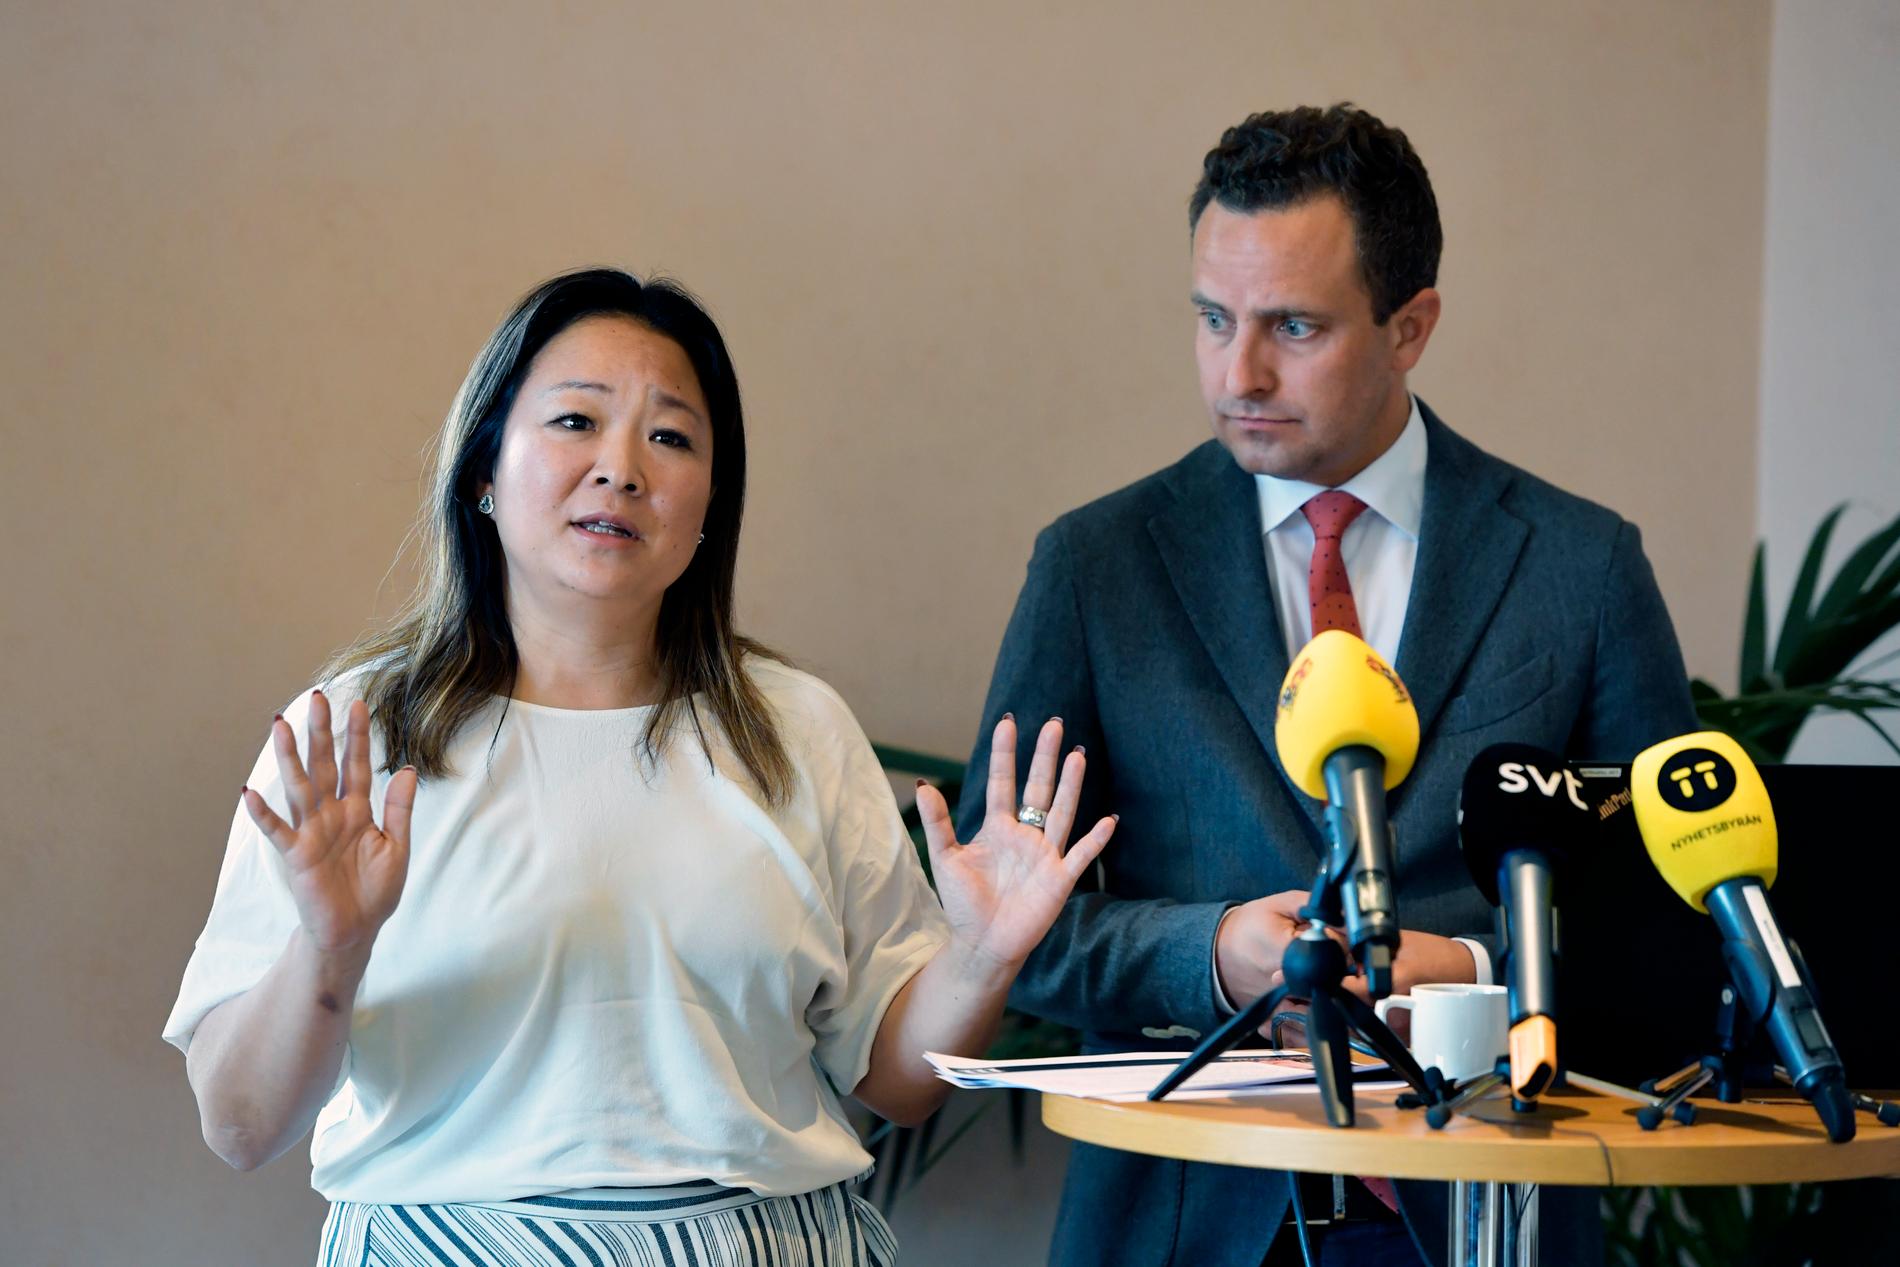 Jessica Polfjärd och Tomas Tobé, rättspolitisk talesperson (M) presenterar nya förslag mot hedersförtryck under en pressträff i riksdagen i Stockholm. 